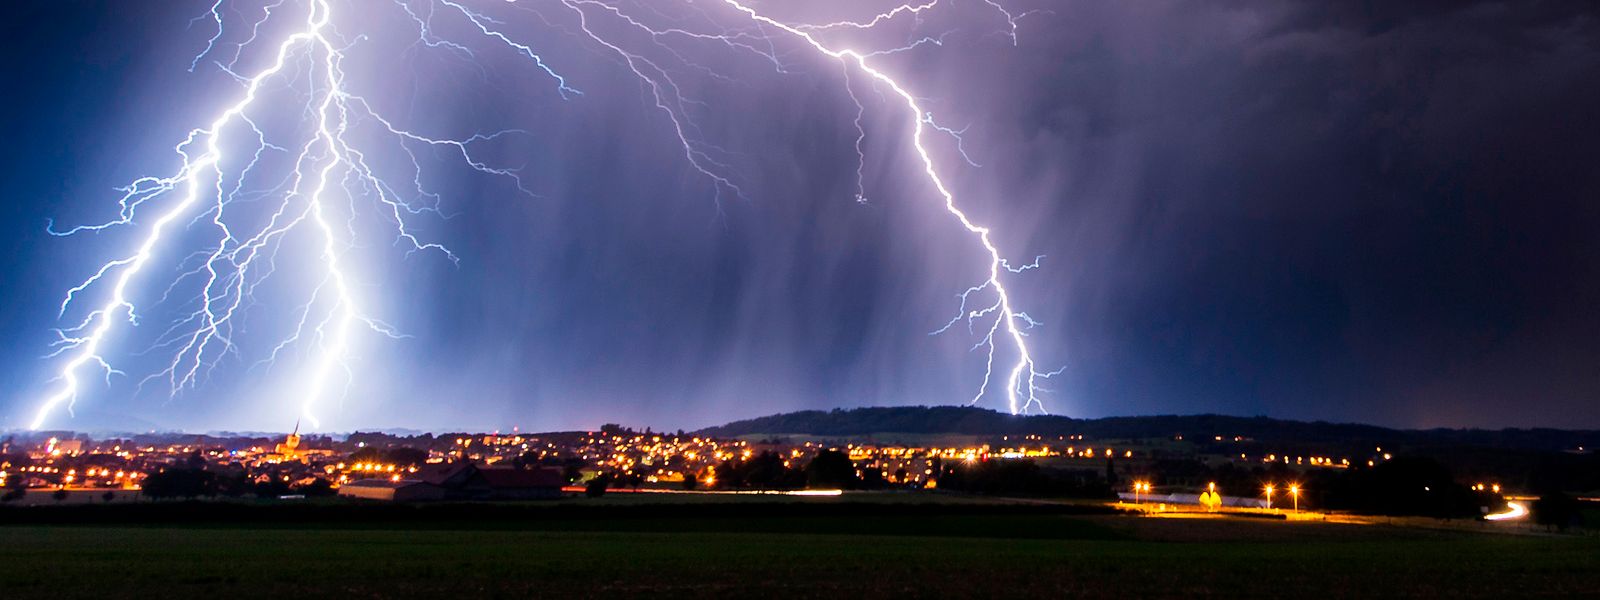 Blitze können sich über weite Distanzen strecken und stellen in jedem Fall eine große Gefahr dar.